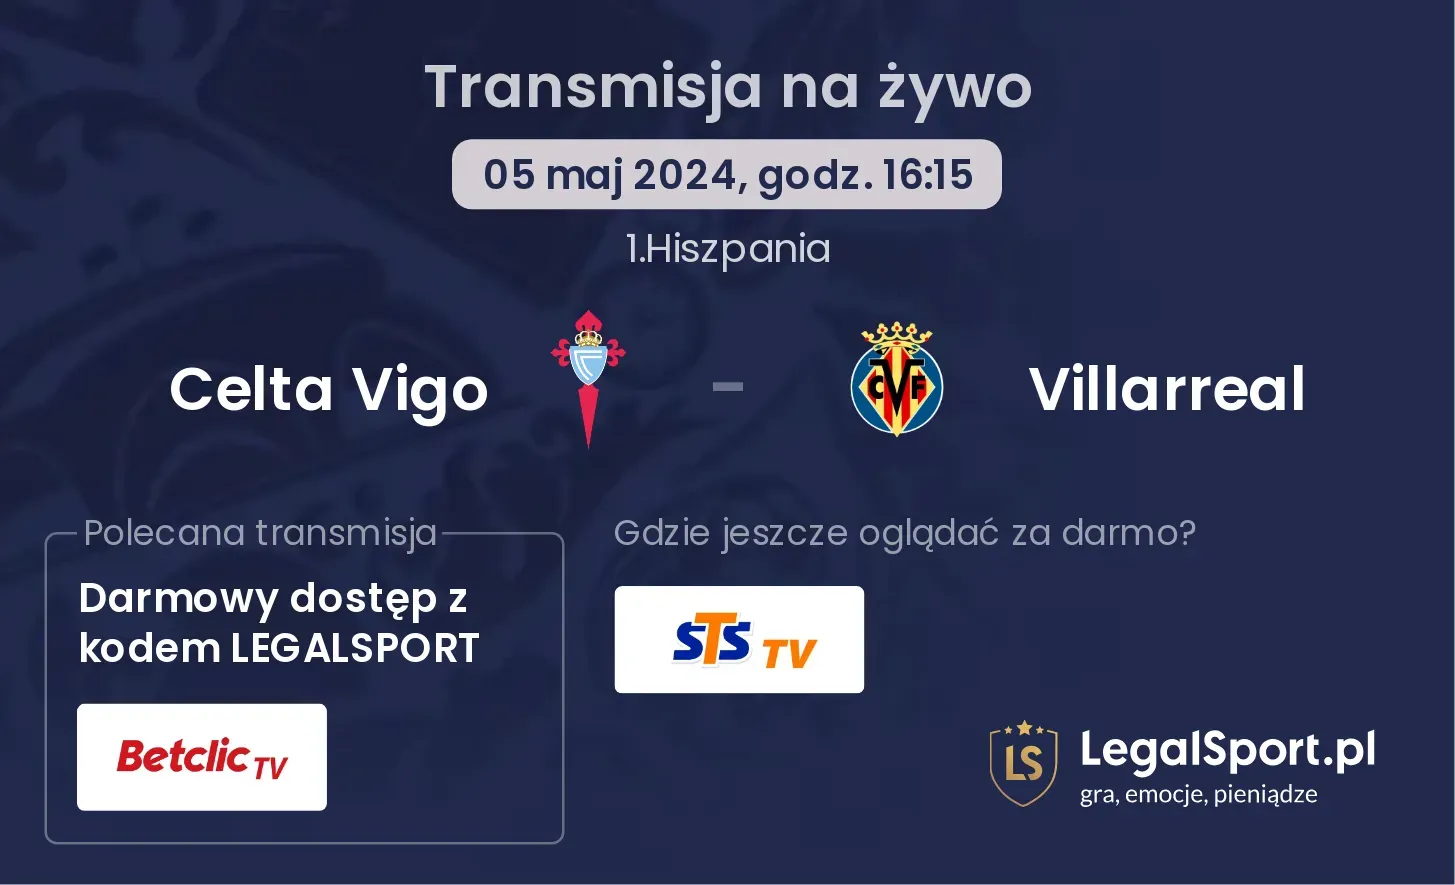 Celta Vigo - Villarreal transmisja na żywo